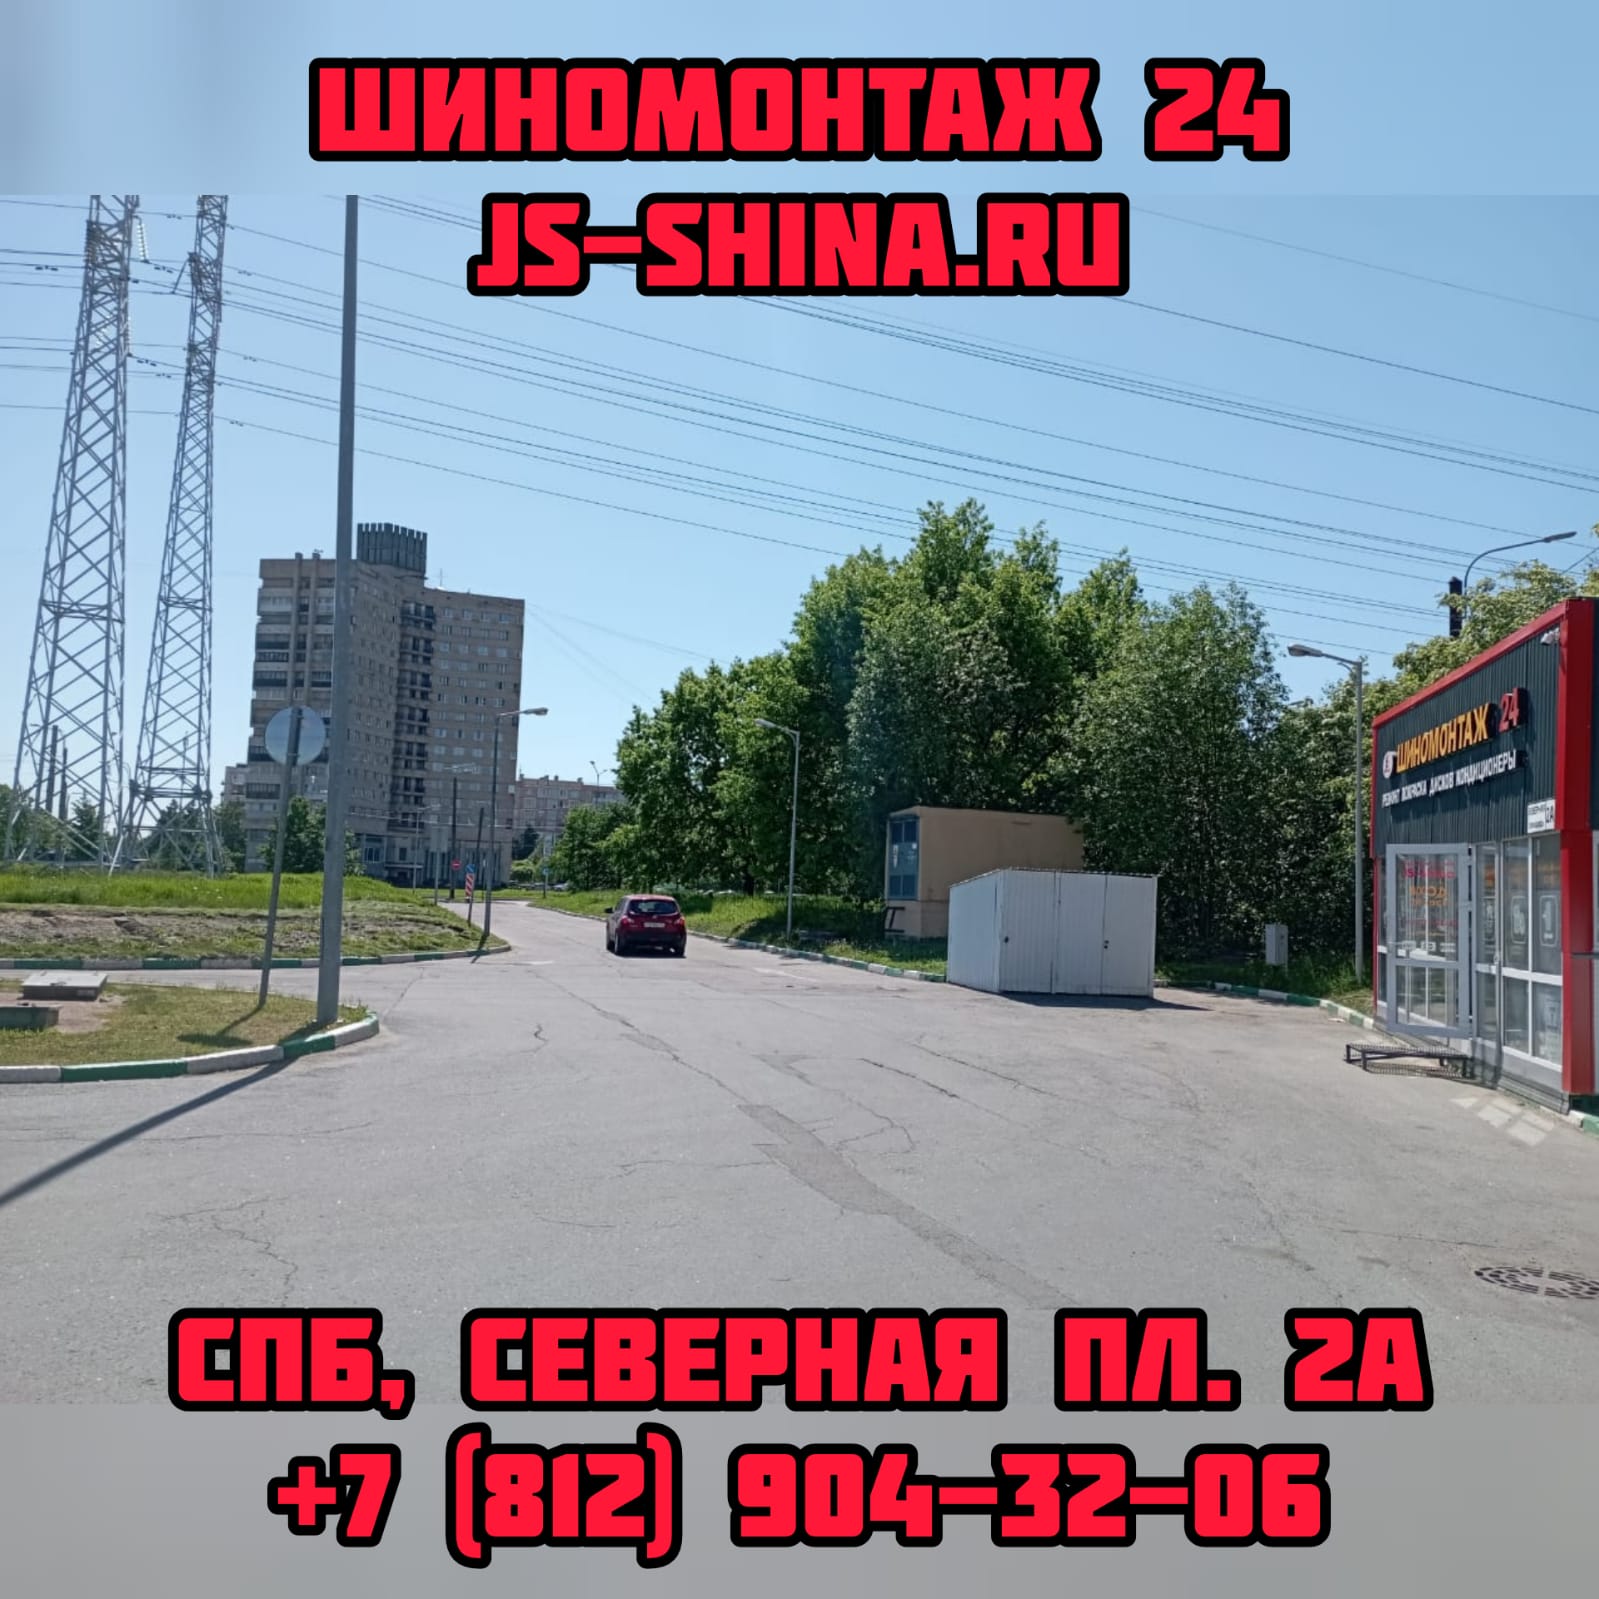 Шиномонтаж 24 часа в СПб, Северная пл. 2А ремонт дисков